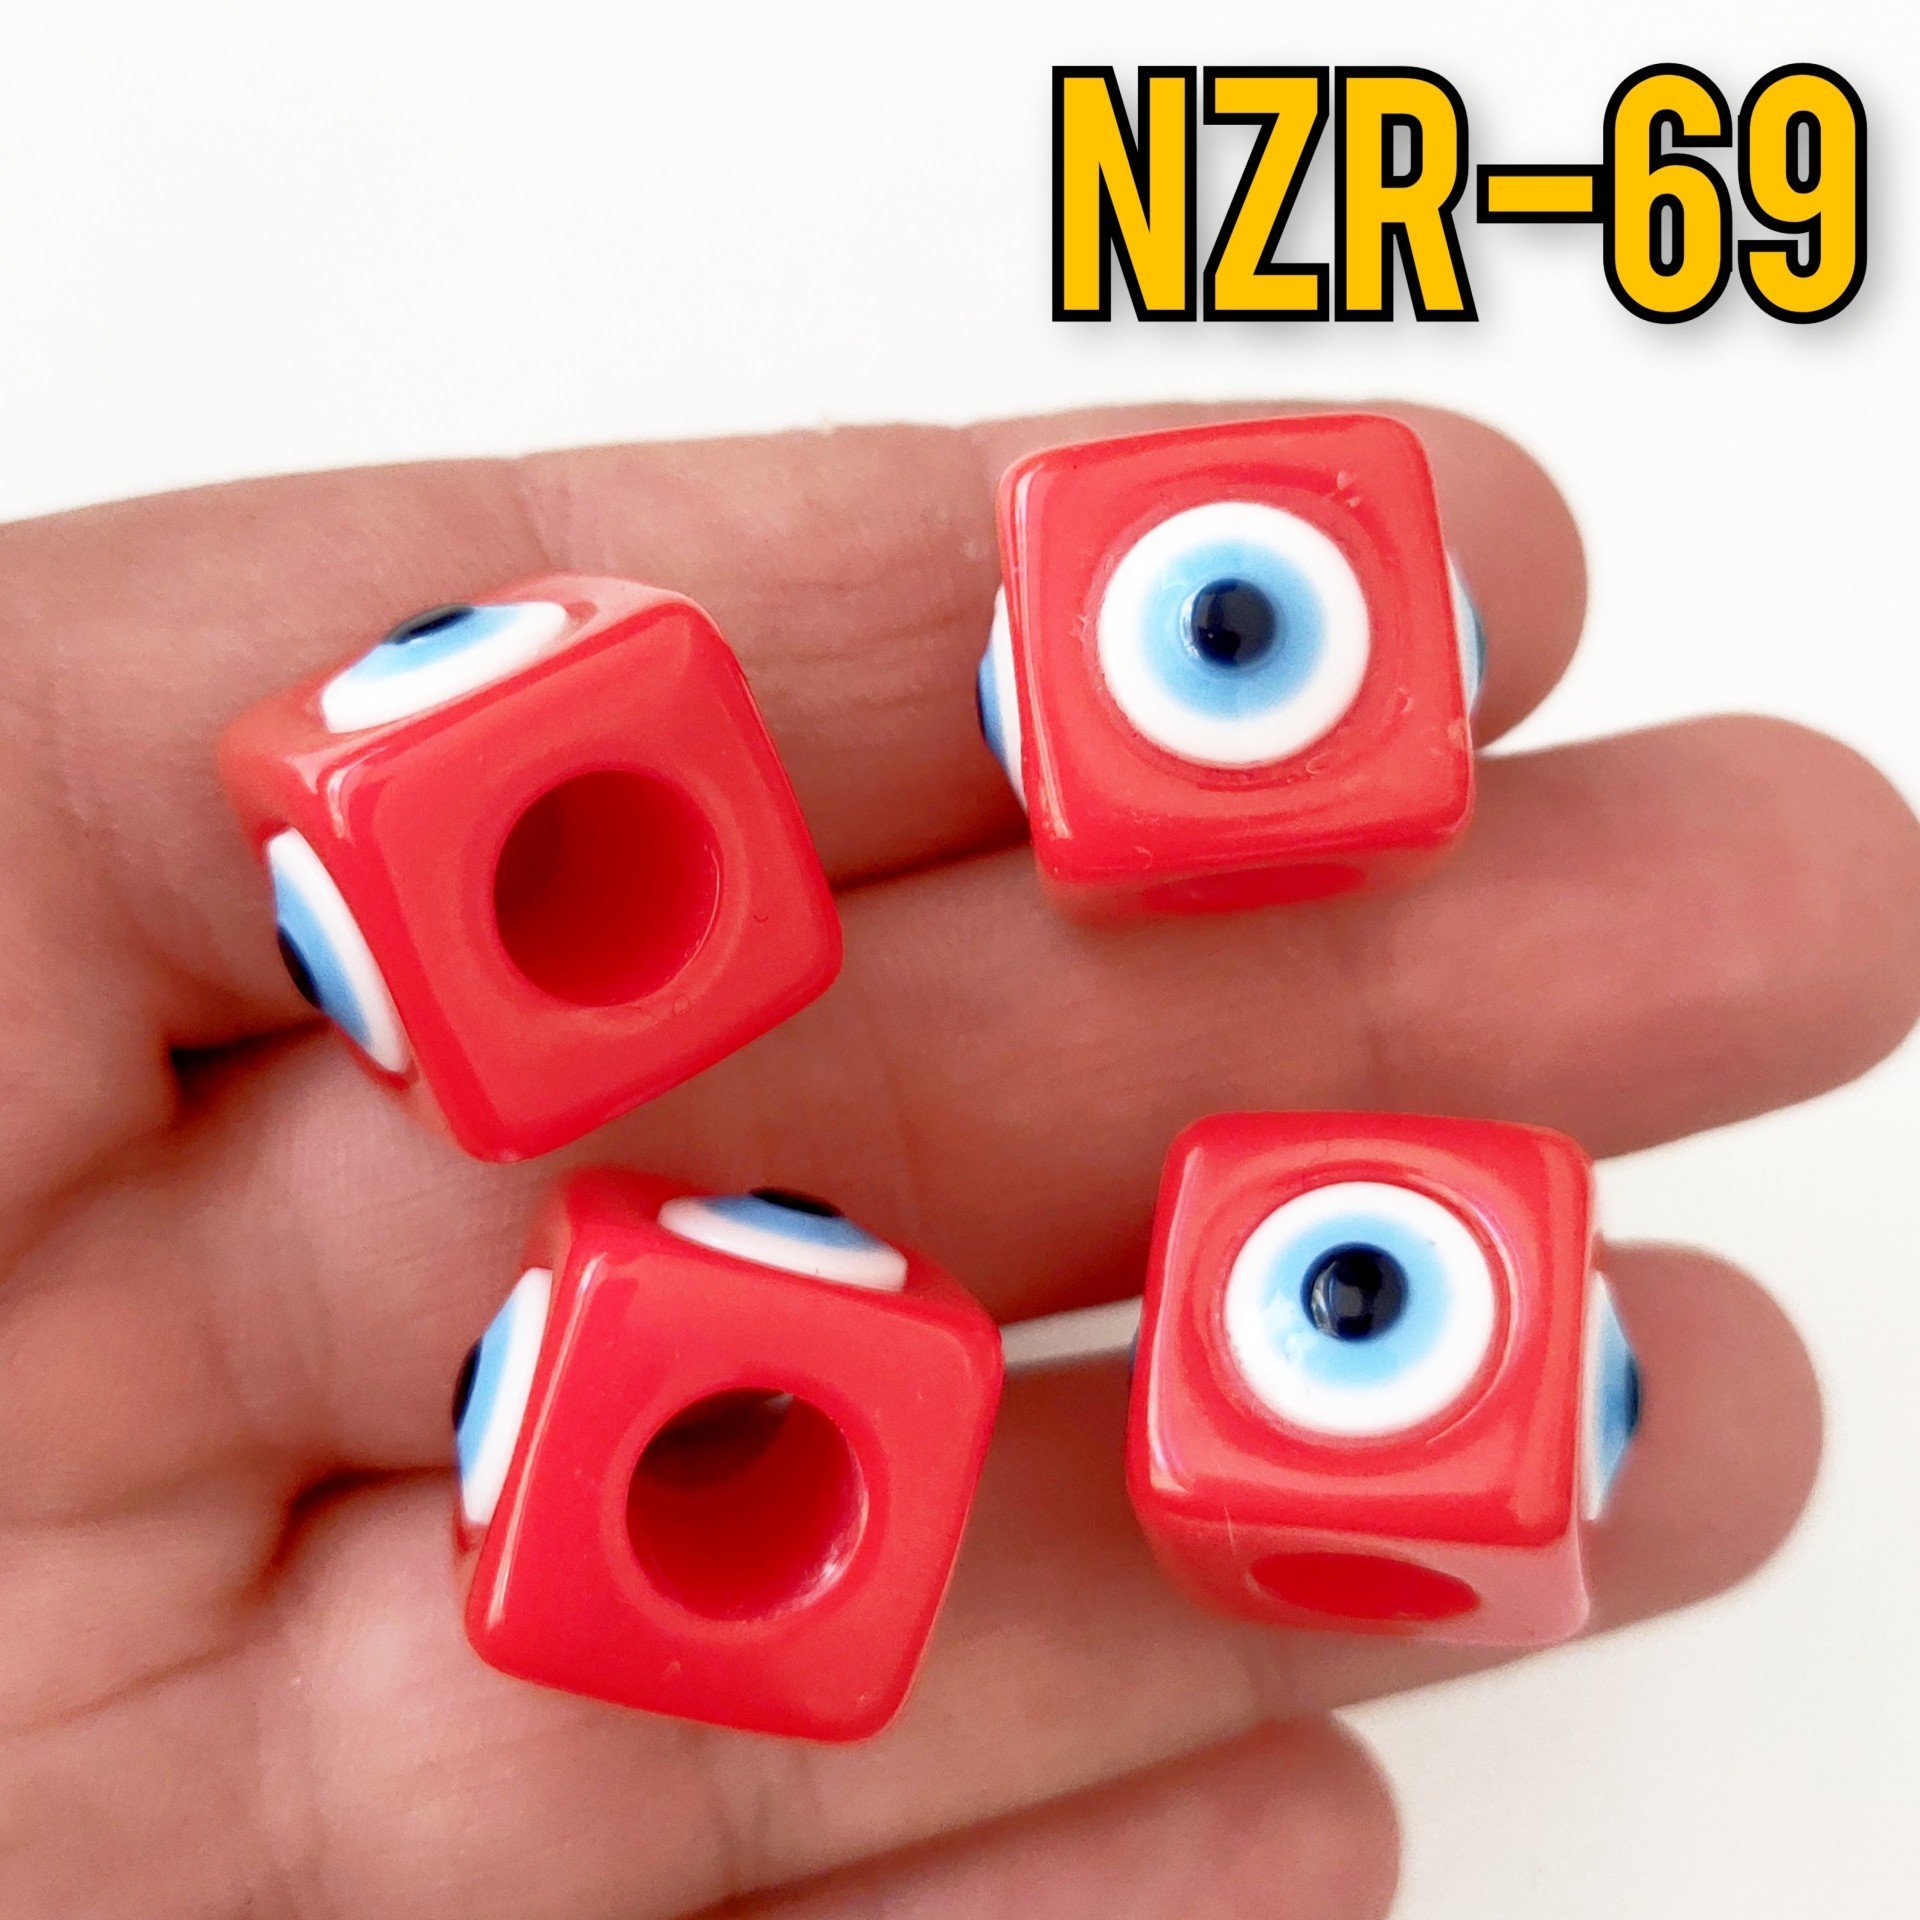 NZR-69 Büyük Boy Küp Akrilik Nazar Boncuğu Kırmızı